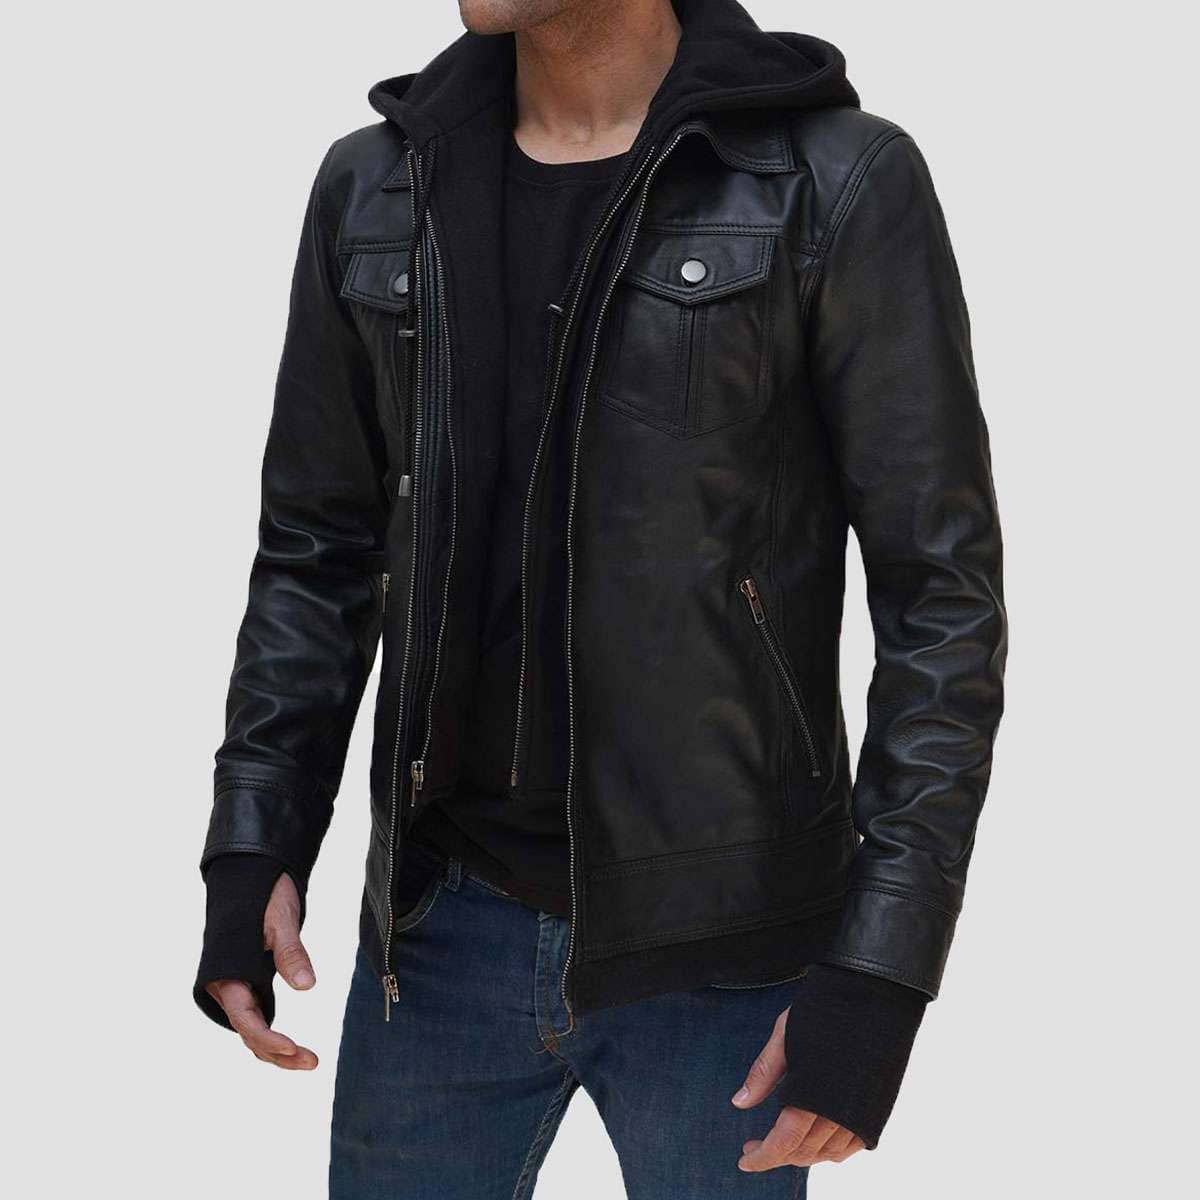 Justin Bomber Hooded Black Leather Jacket for Men